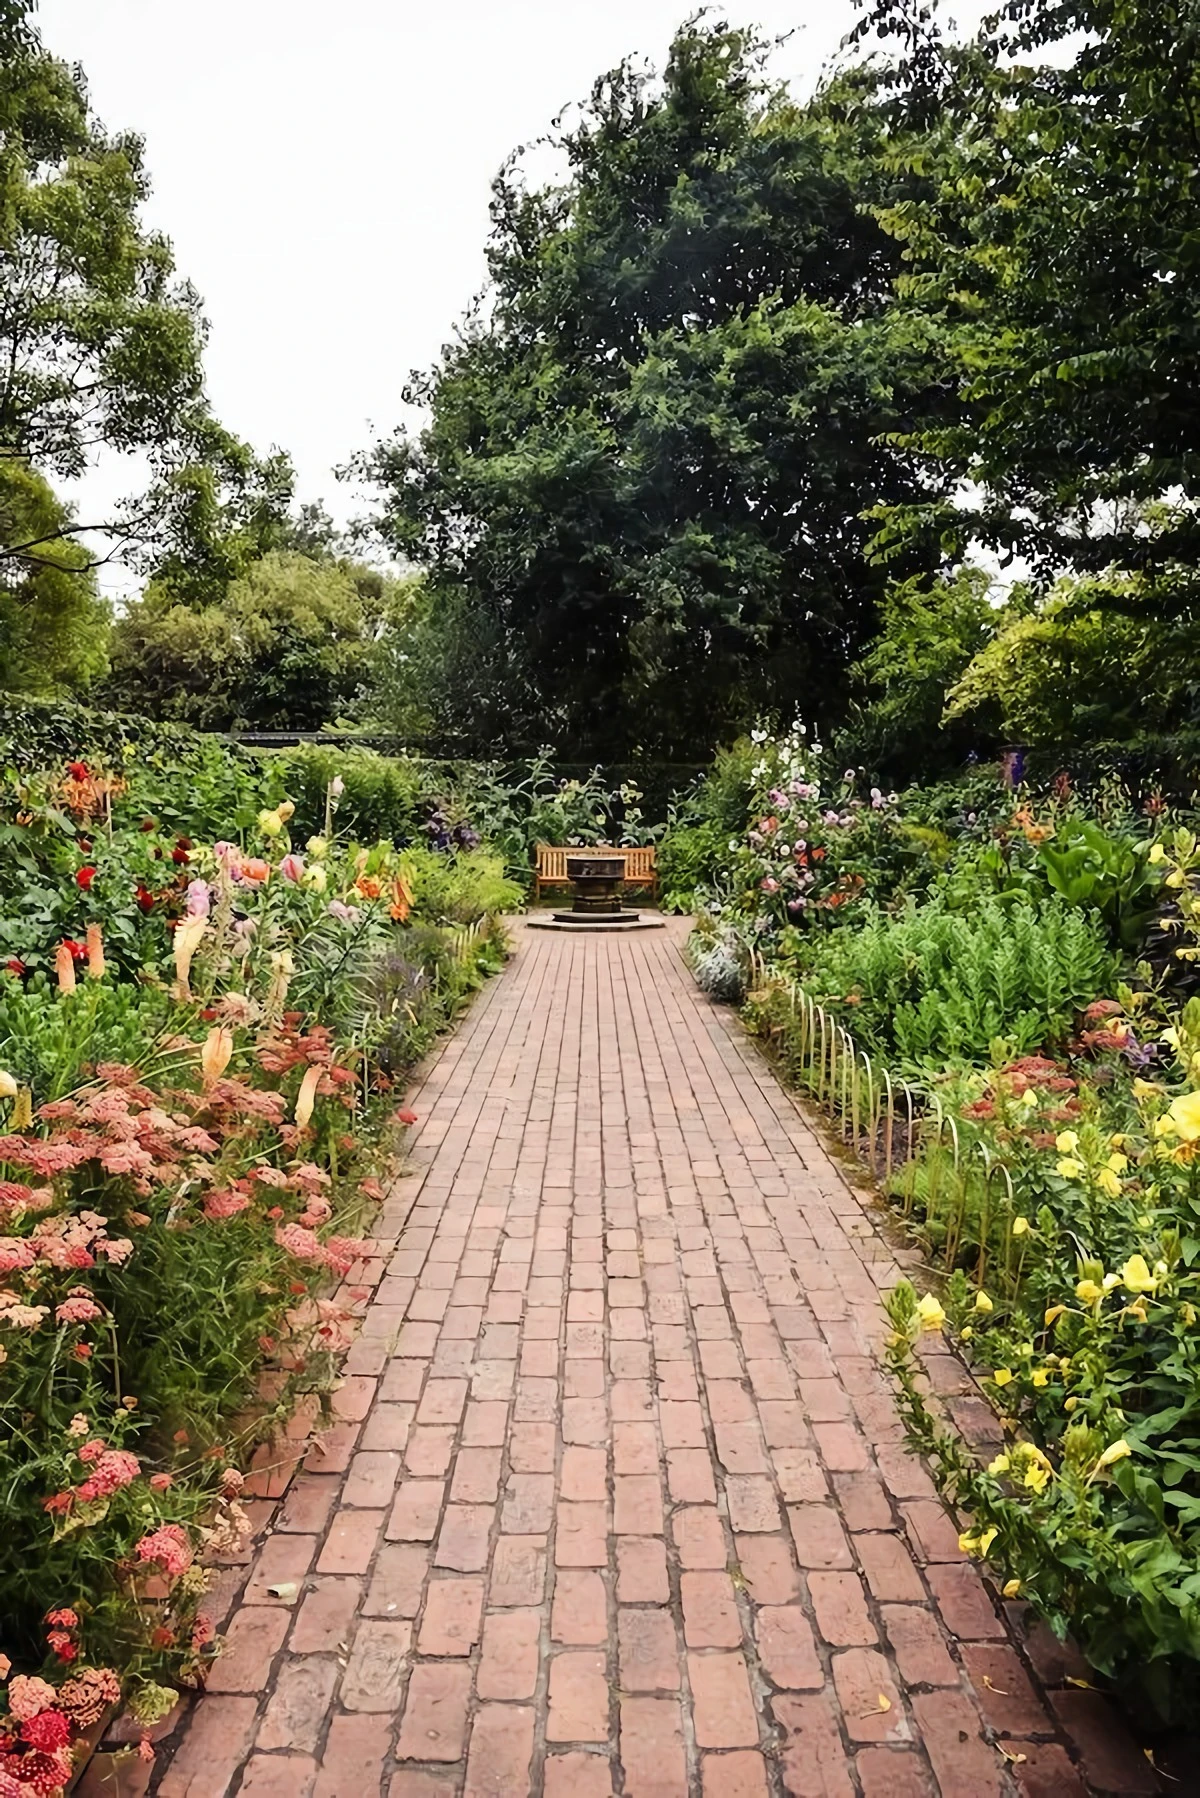 bewilding garden with brick path